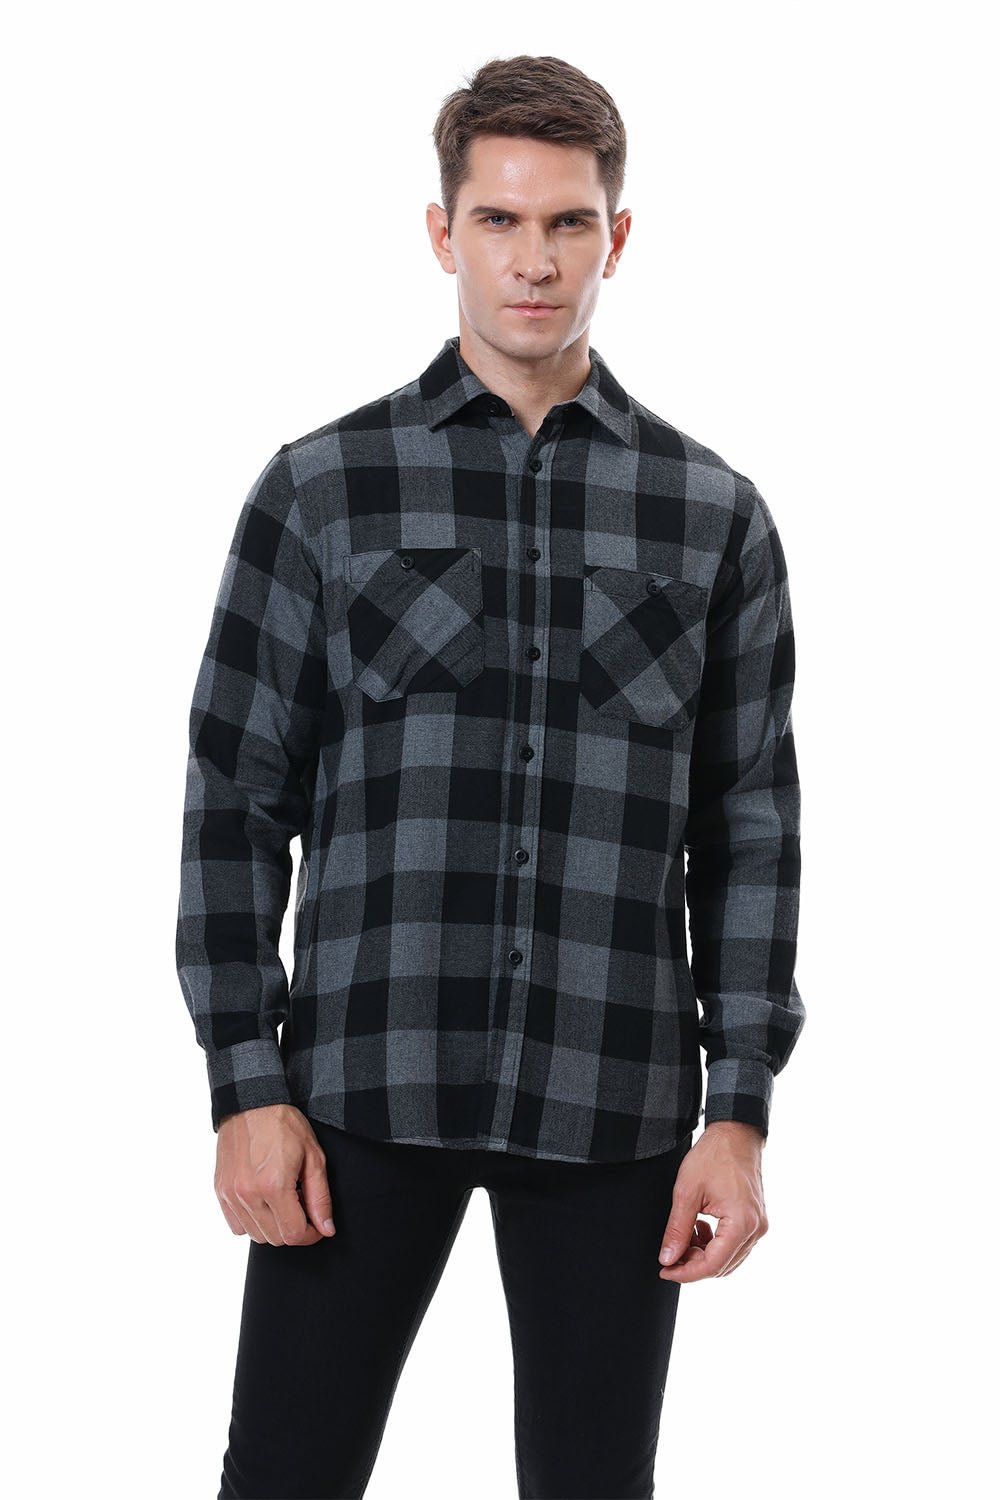 Men's Plaid Flannel Shirt Grey/Black Alex Vando Fashion